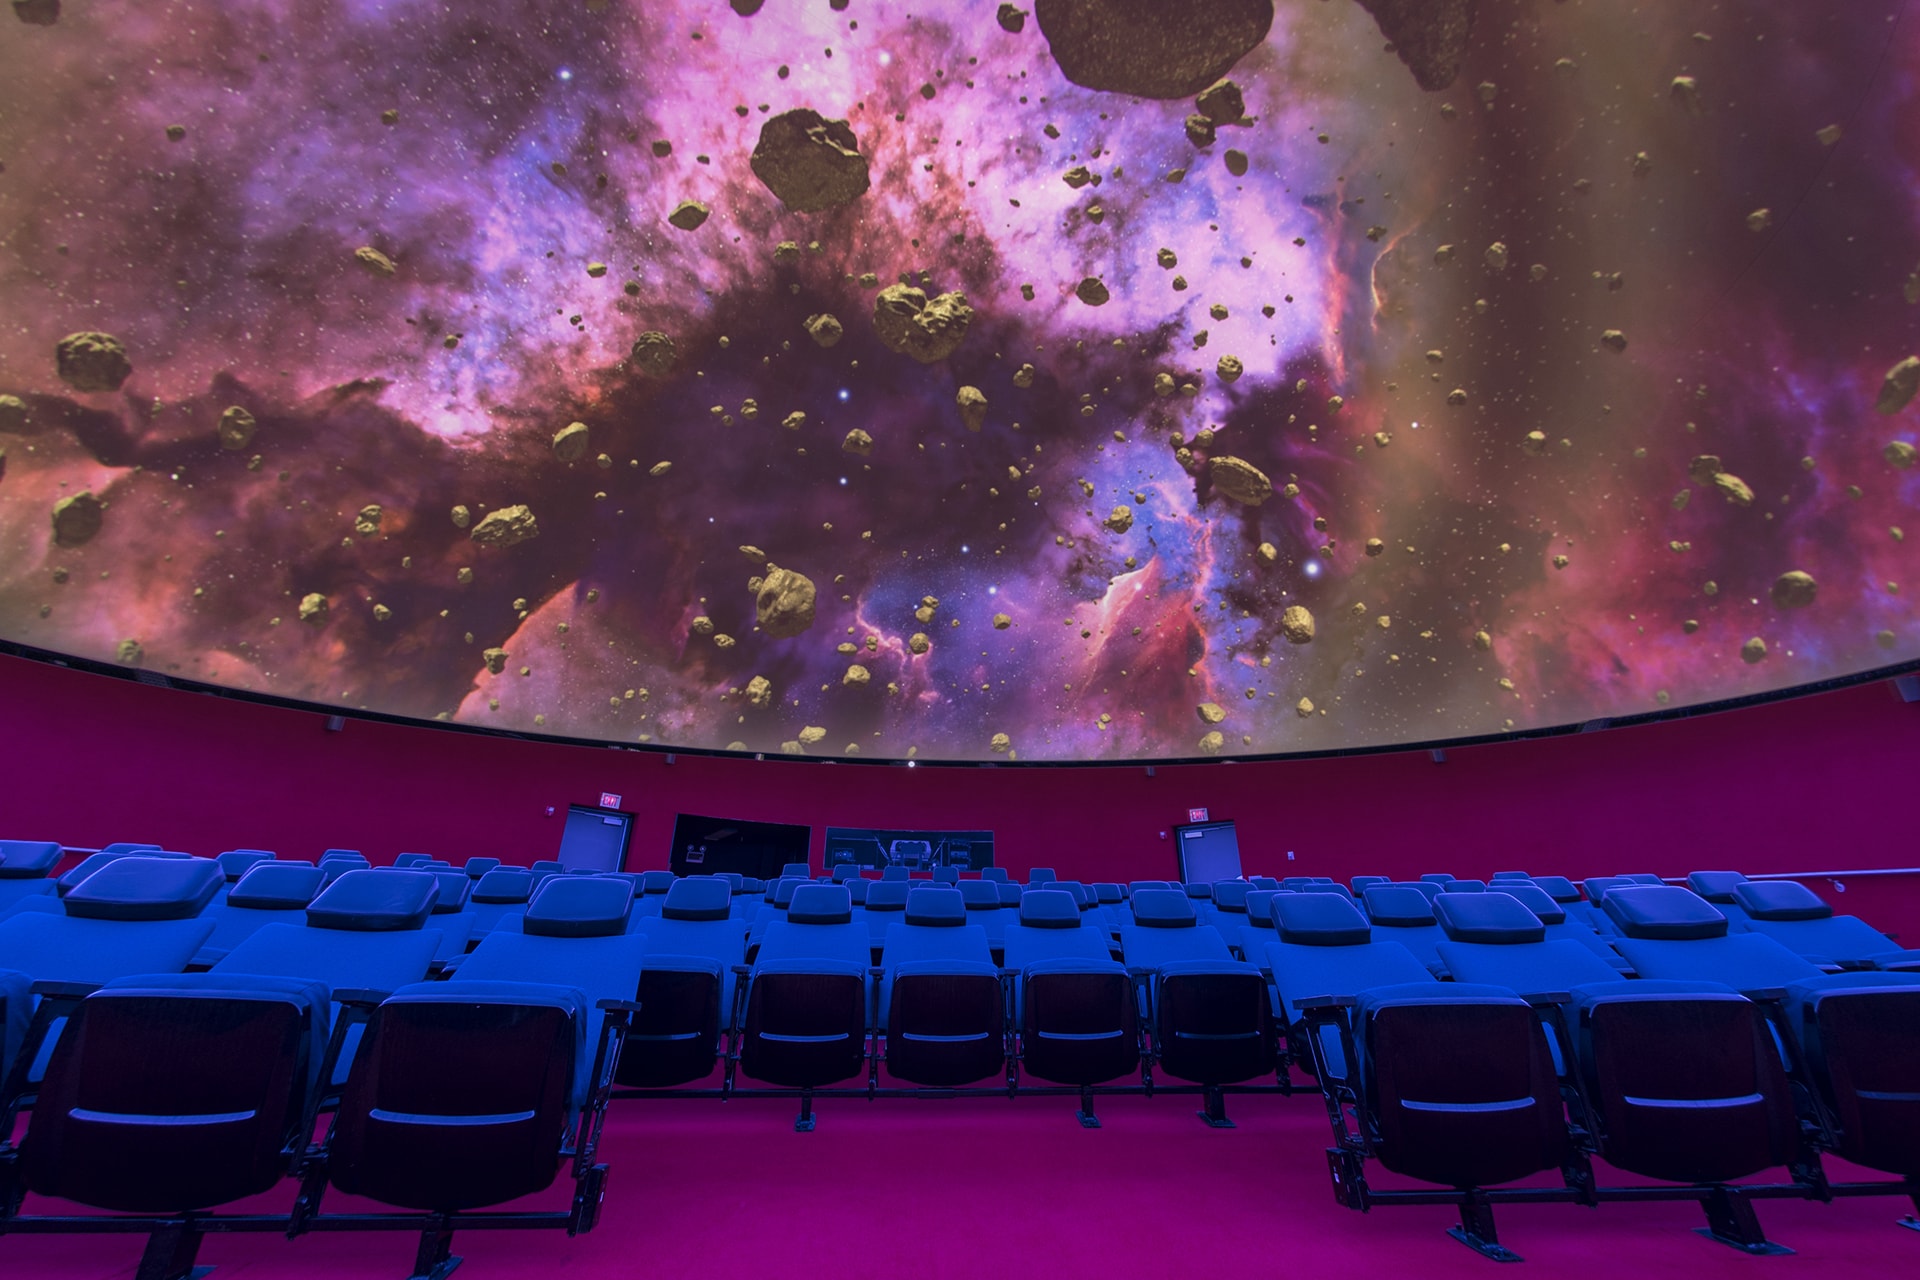 The Planetarium Theater